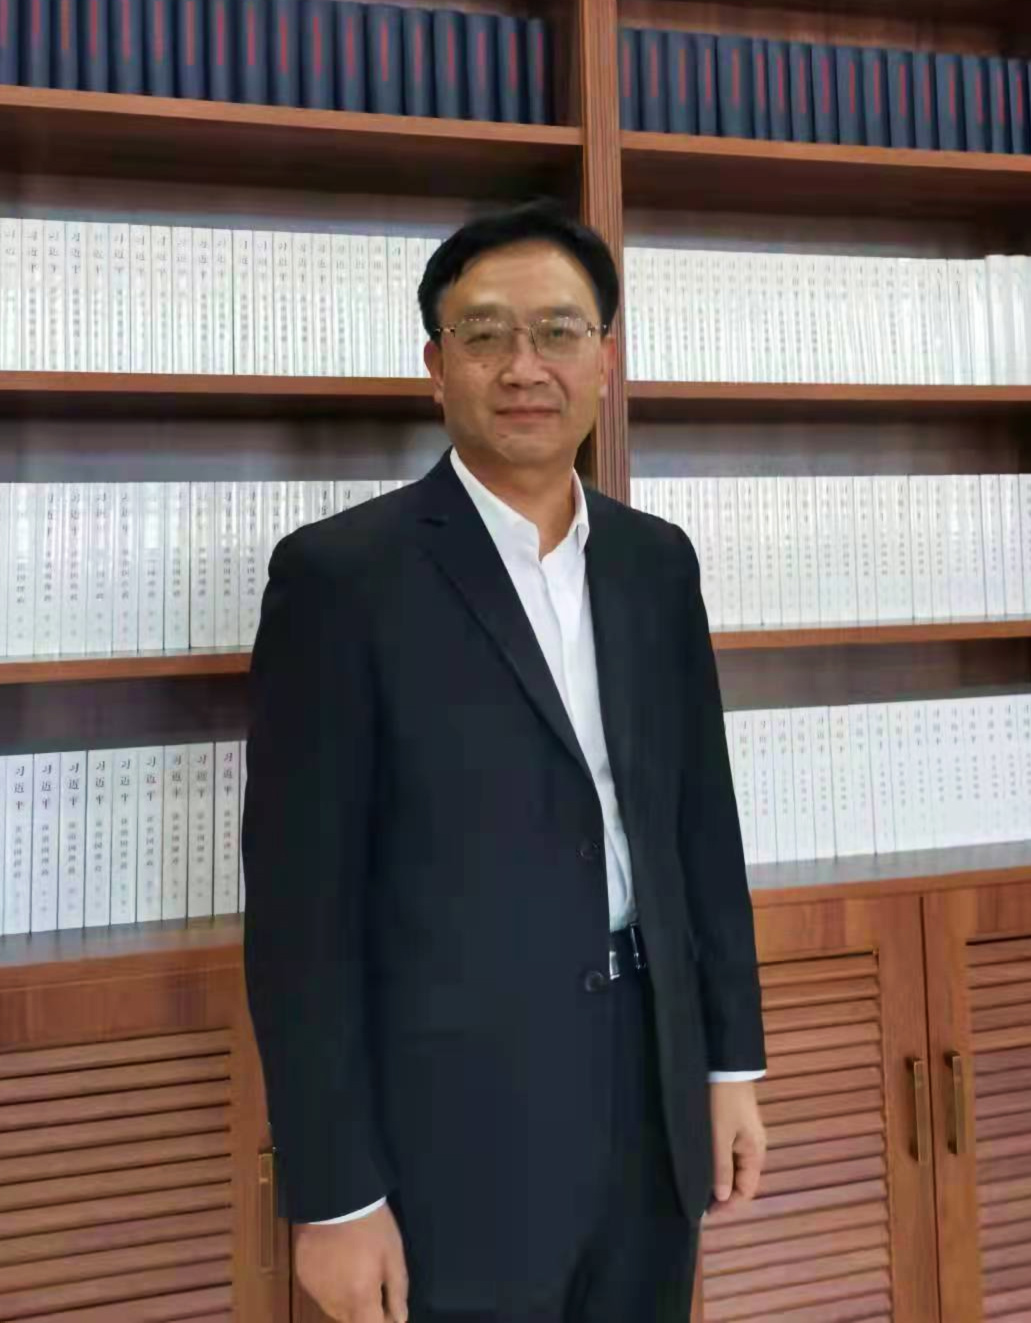 Liang Yuchun is deputy dean of the School of Marxism, Xinjiang Normal University.